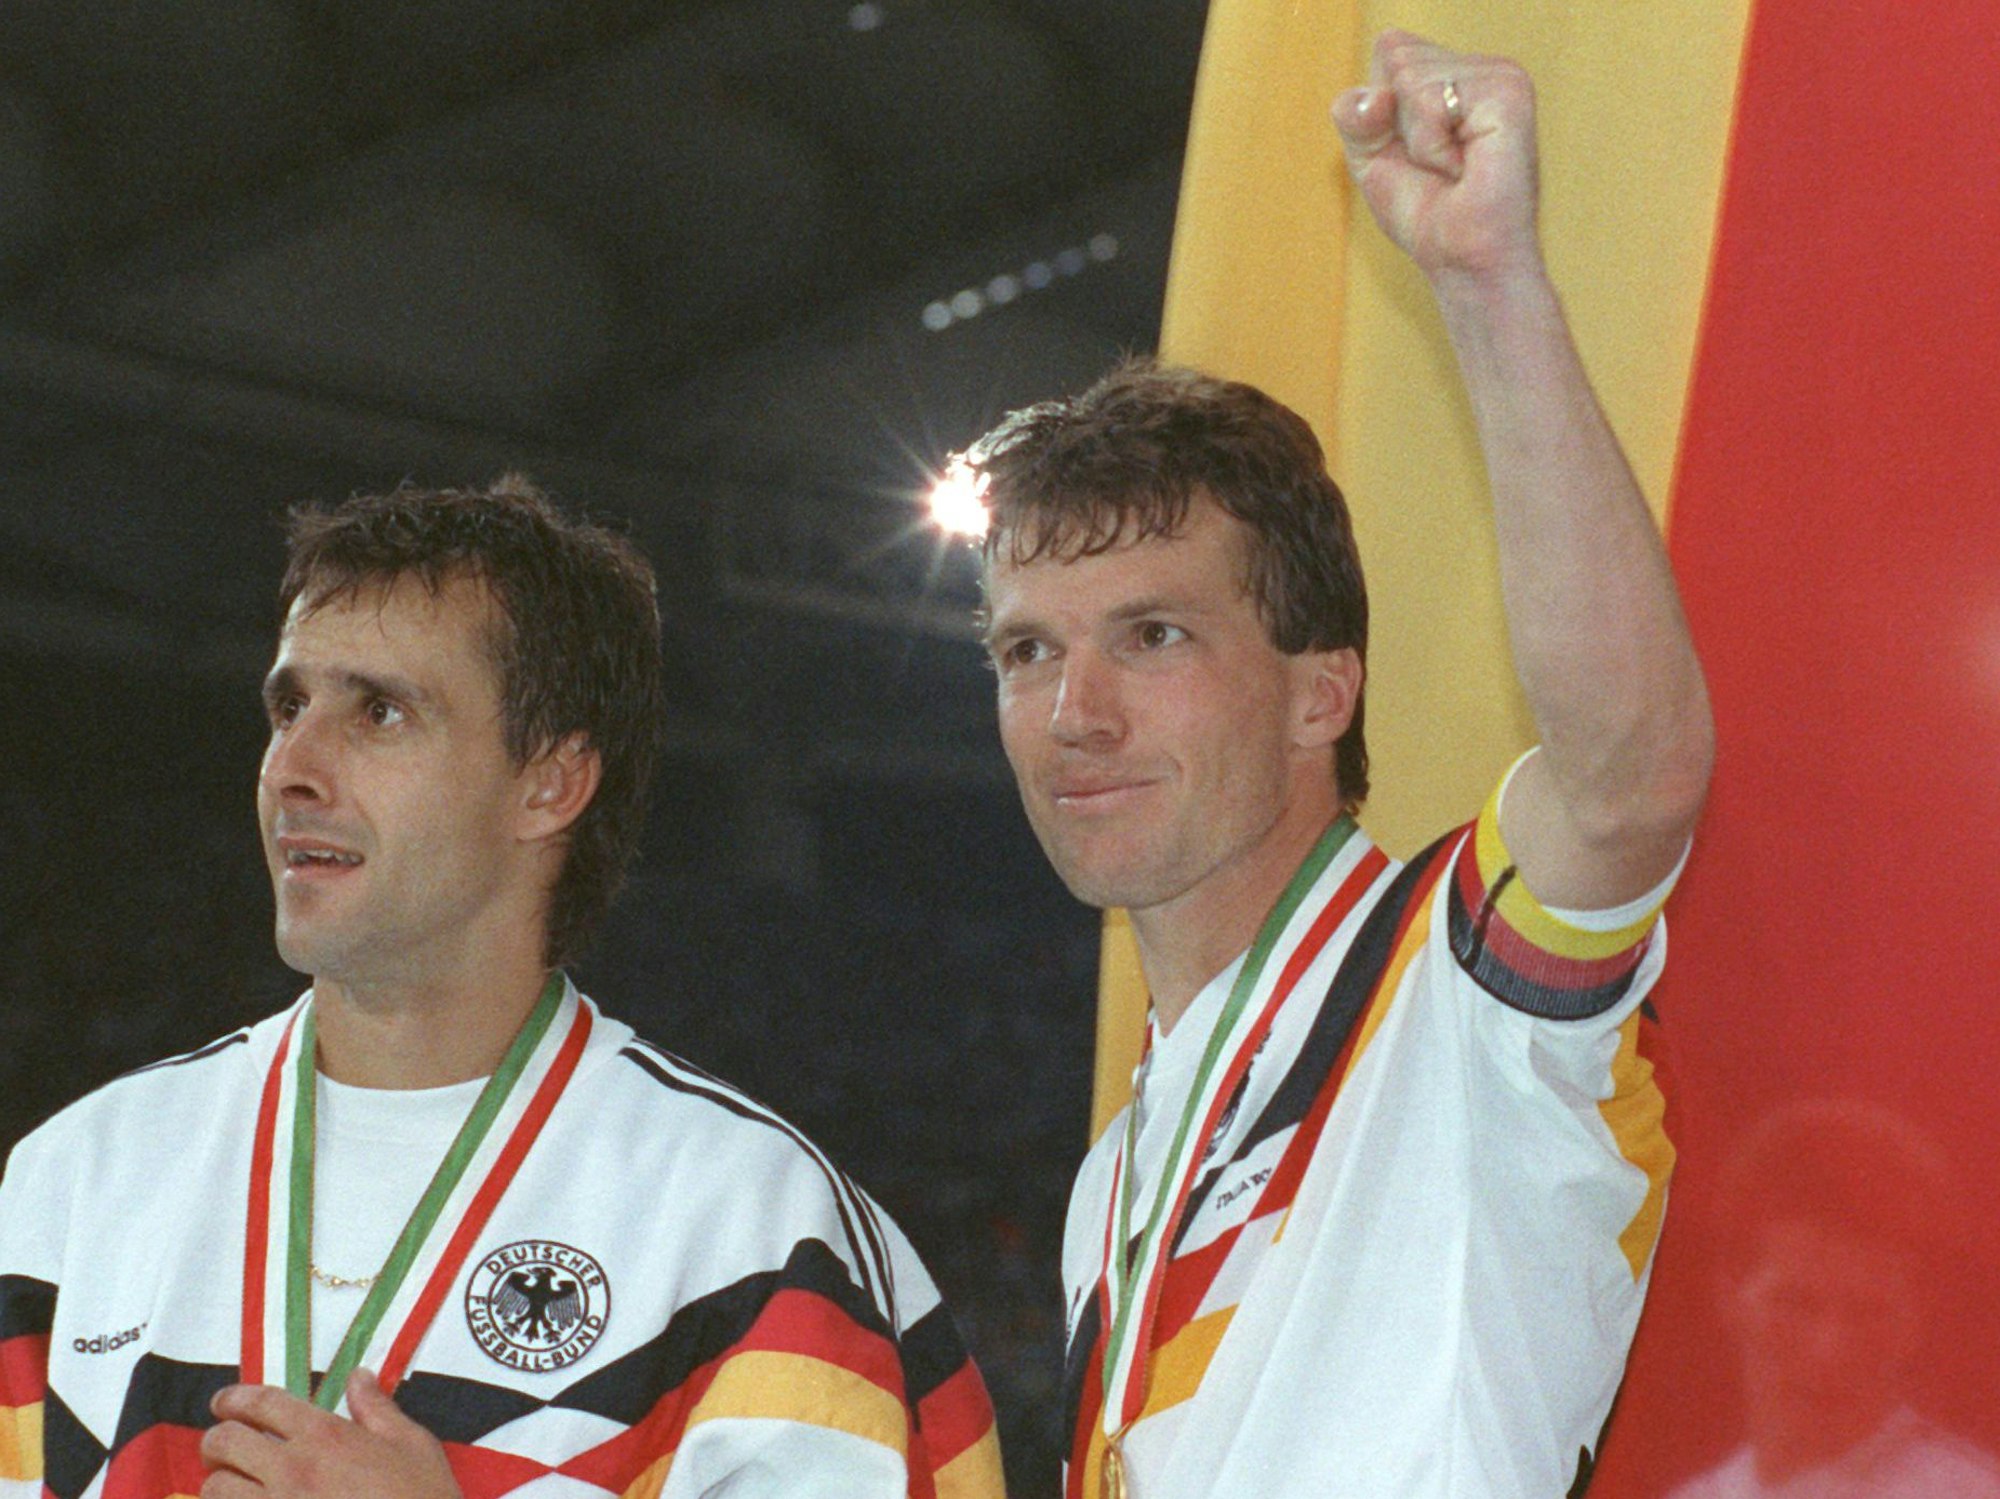 Der deutsche Mittelfeldspieler und Kapitän Lothar Matthäus (r.) und sein Mitstreiter Pierre Littbarski (l.) bejubeln vor der deutschen Fahne den WM-Titel in Italien.